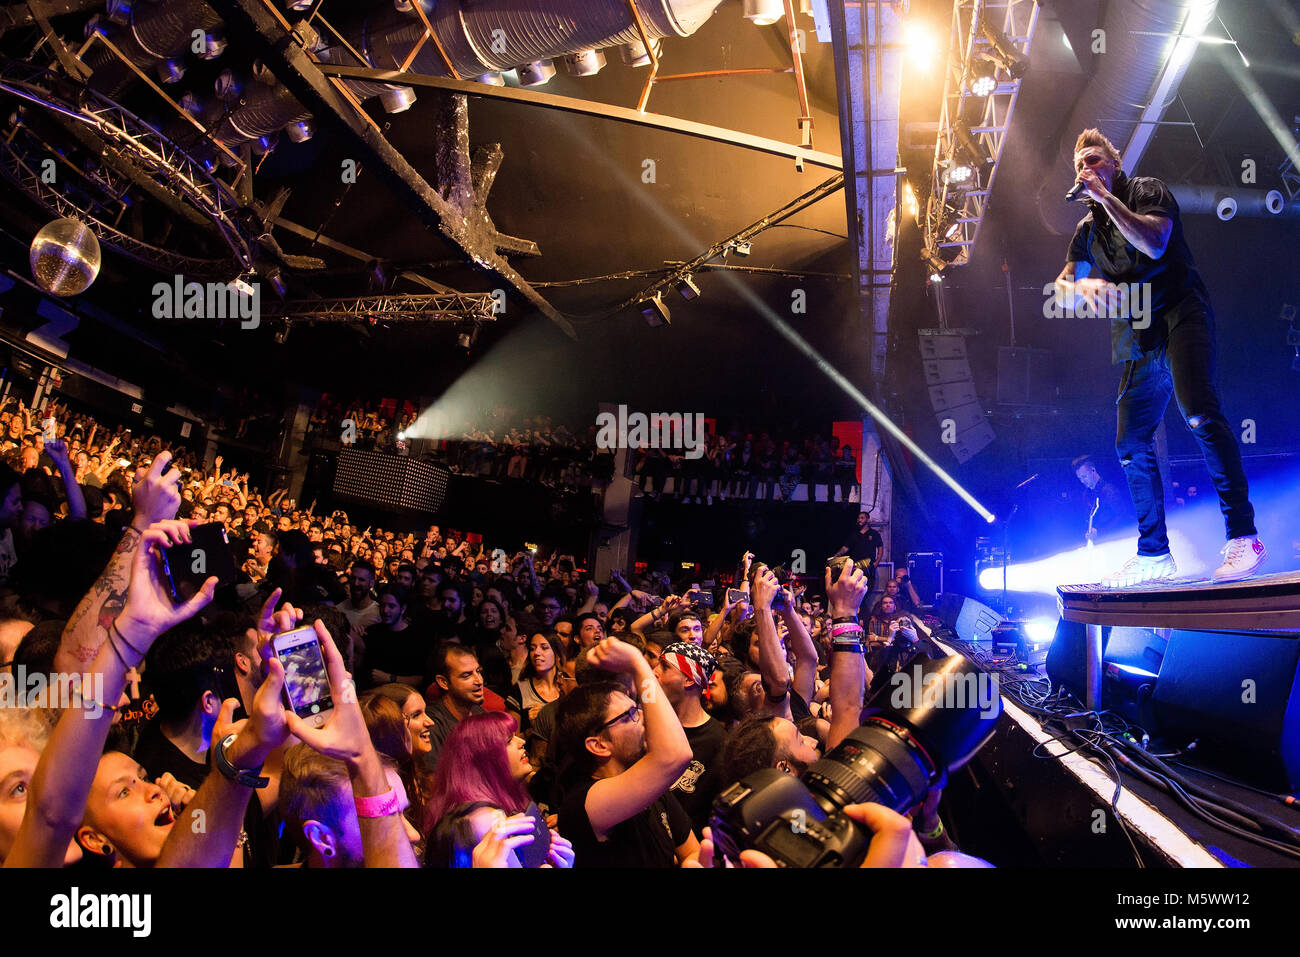 Barcelone - 14 OCT : Papa Roach (rock band) produisent en concert à Razzmatazz Club le 14 octobre 2017 à Barcelone, Espagne. Banque D'Images